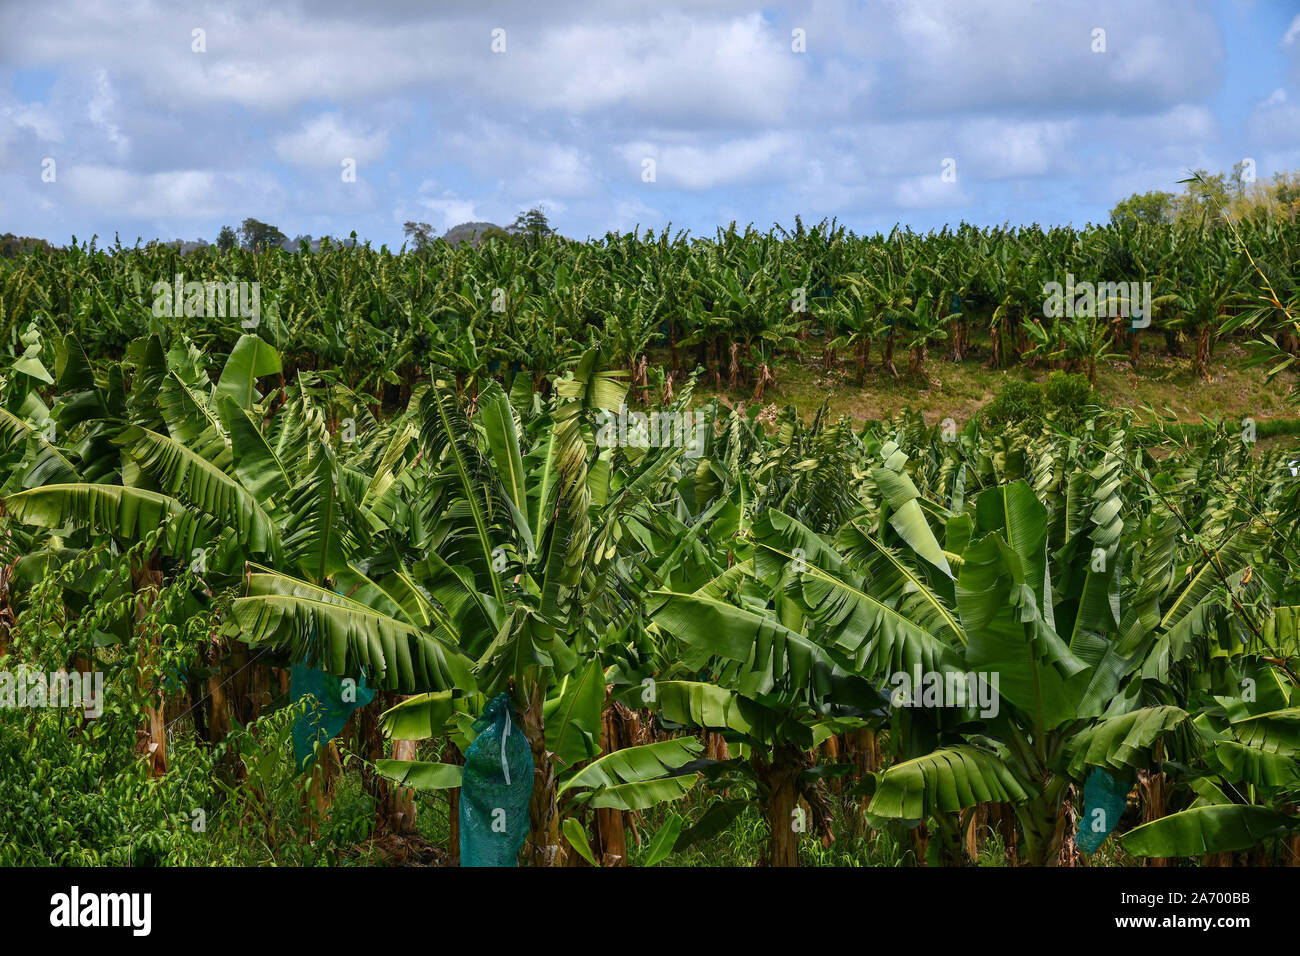 Martinique, plantations de bananes dans la région de Le François. Les plantations de banane, de la production de bananes de la Martinique Banque D'Images